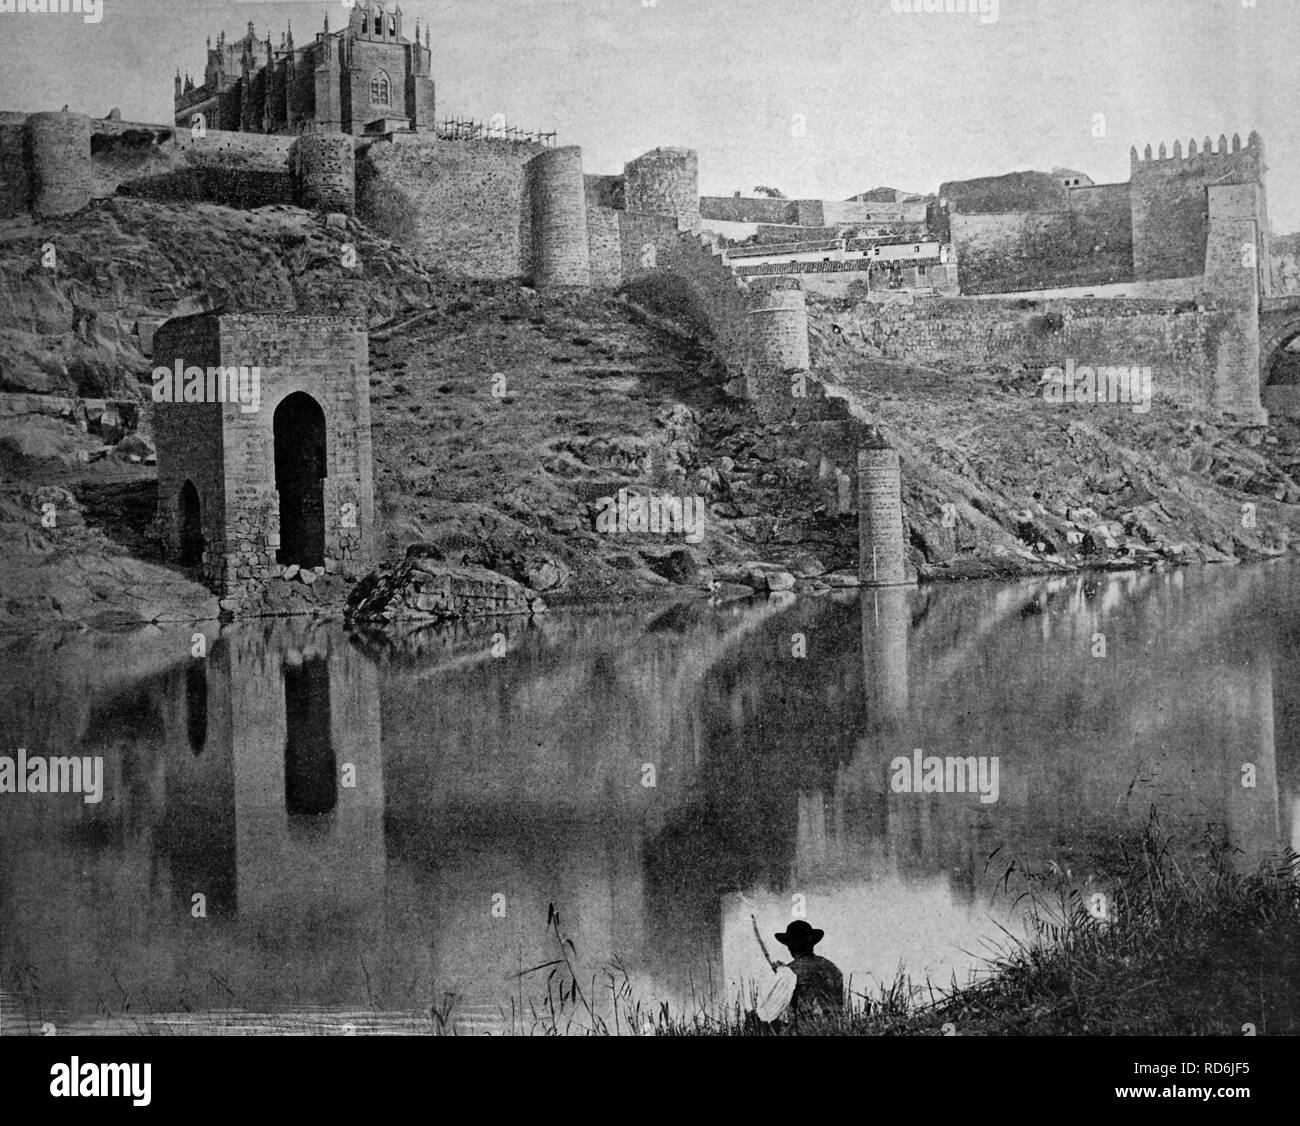 Autotype precoce di Toledo, sito Patrimonio Mondiale dell'UNESCO, Castilla la Mancha, in Spagna, foto storiche, 1884 Foto Stock